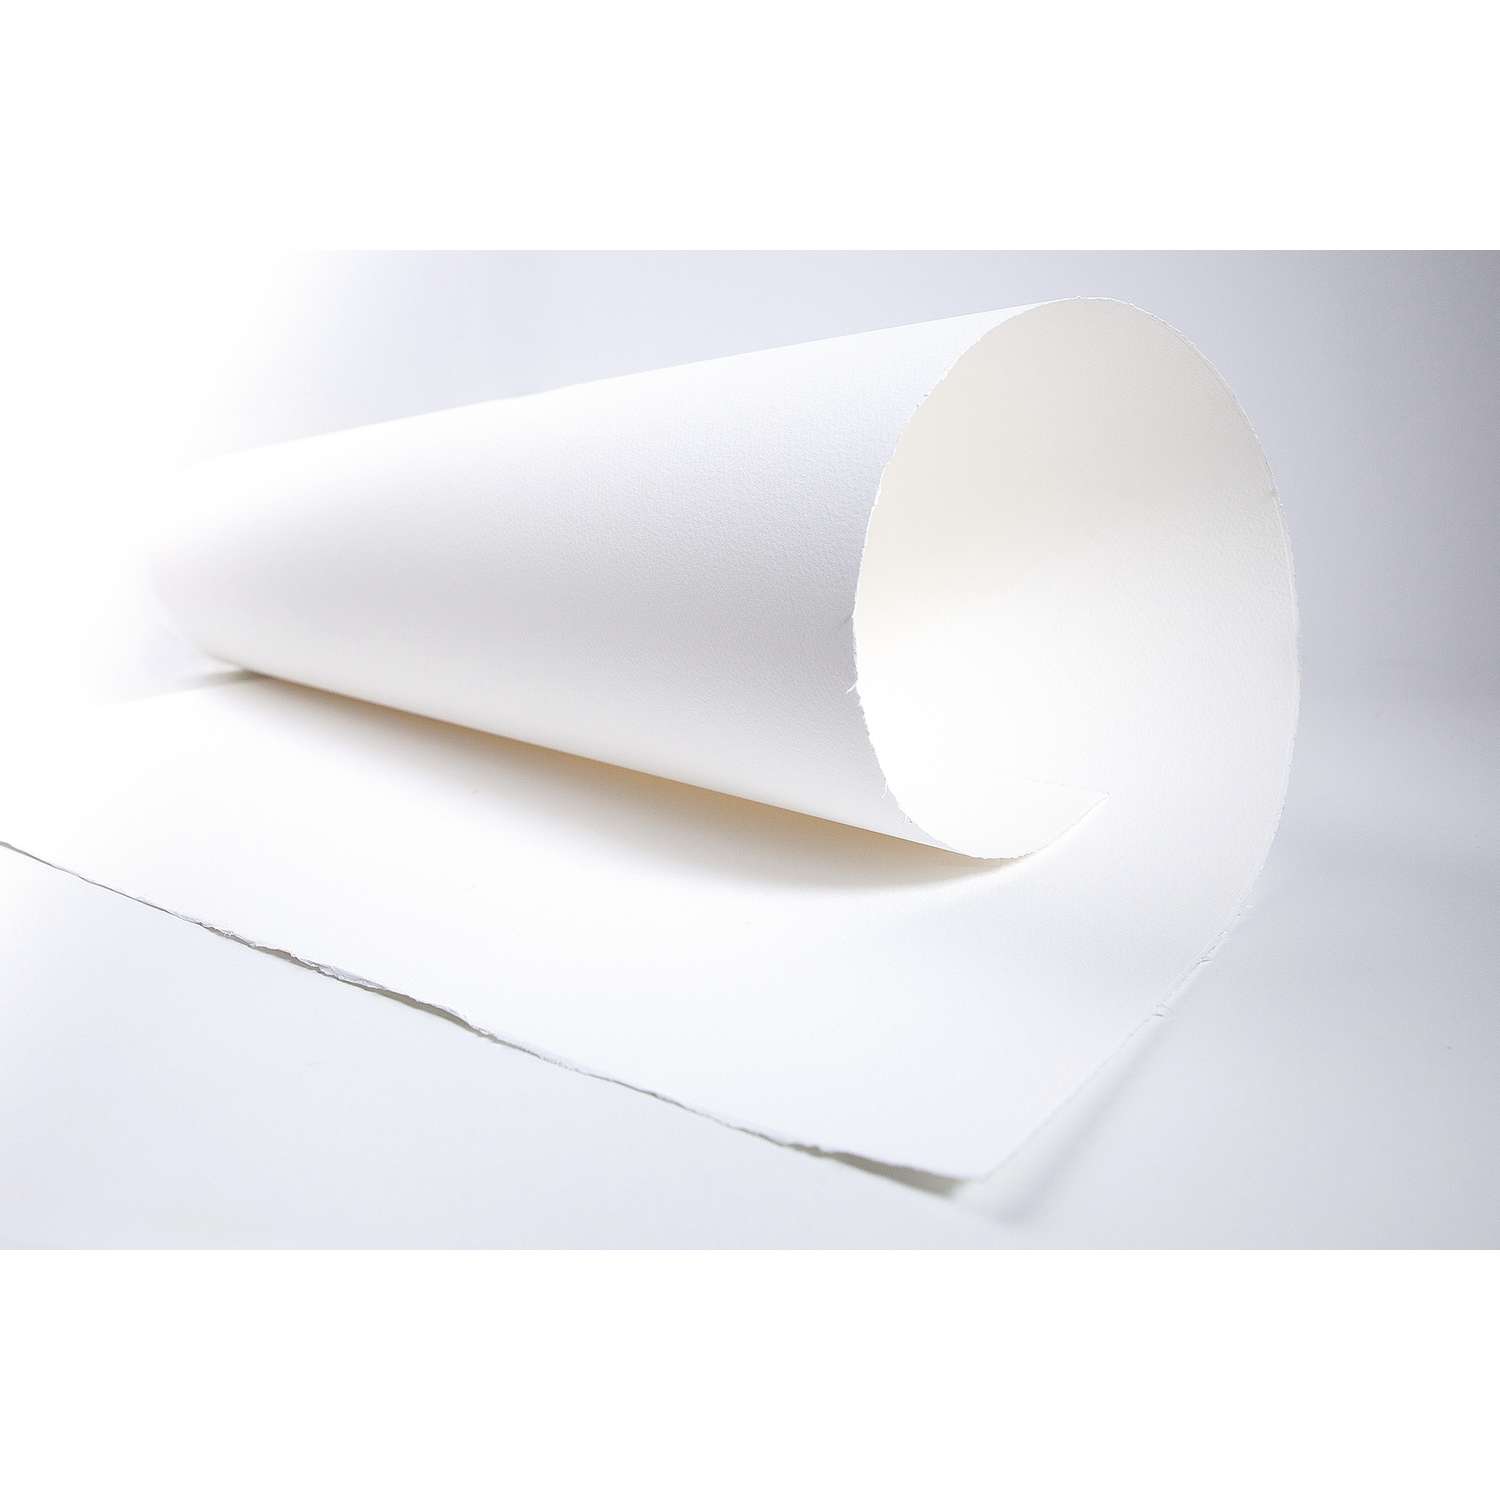 Papier aquarelle 100% coton grain fin 300g/m²